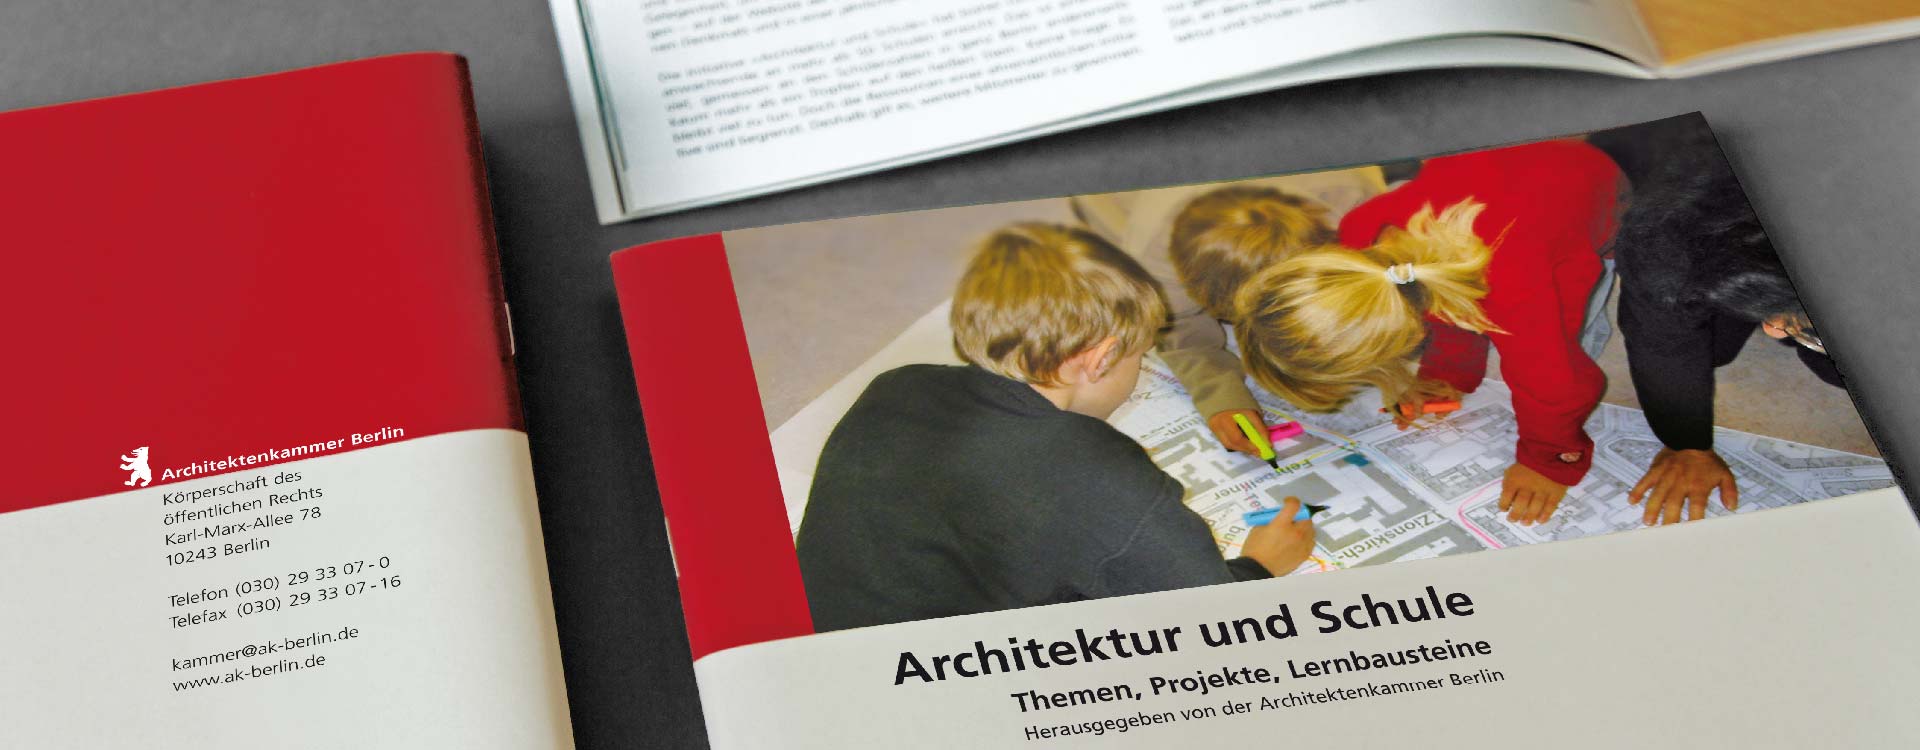 Titel der Broschüre „Architektur und Schule“ von der Architekturkammer Berlin; Design: Kattrin Richter | Büro für Grafikdesign